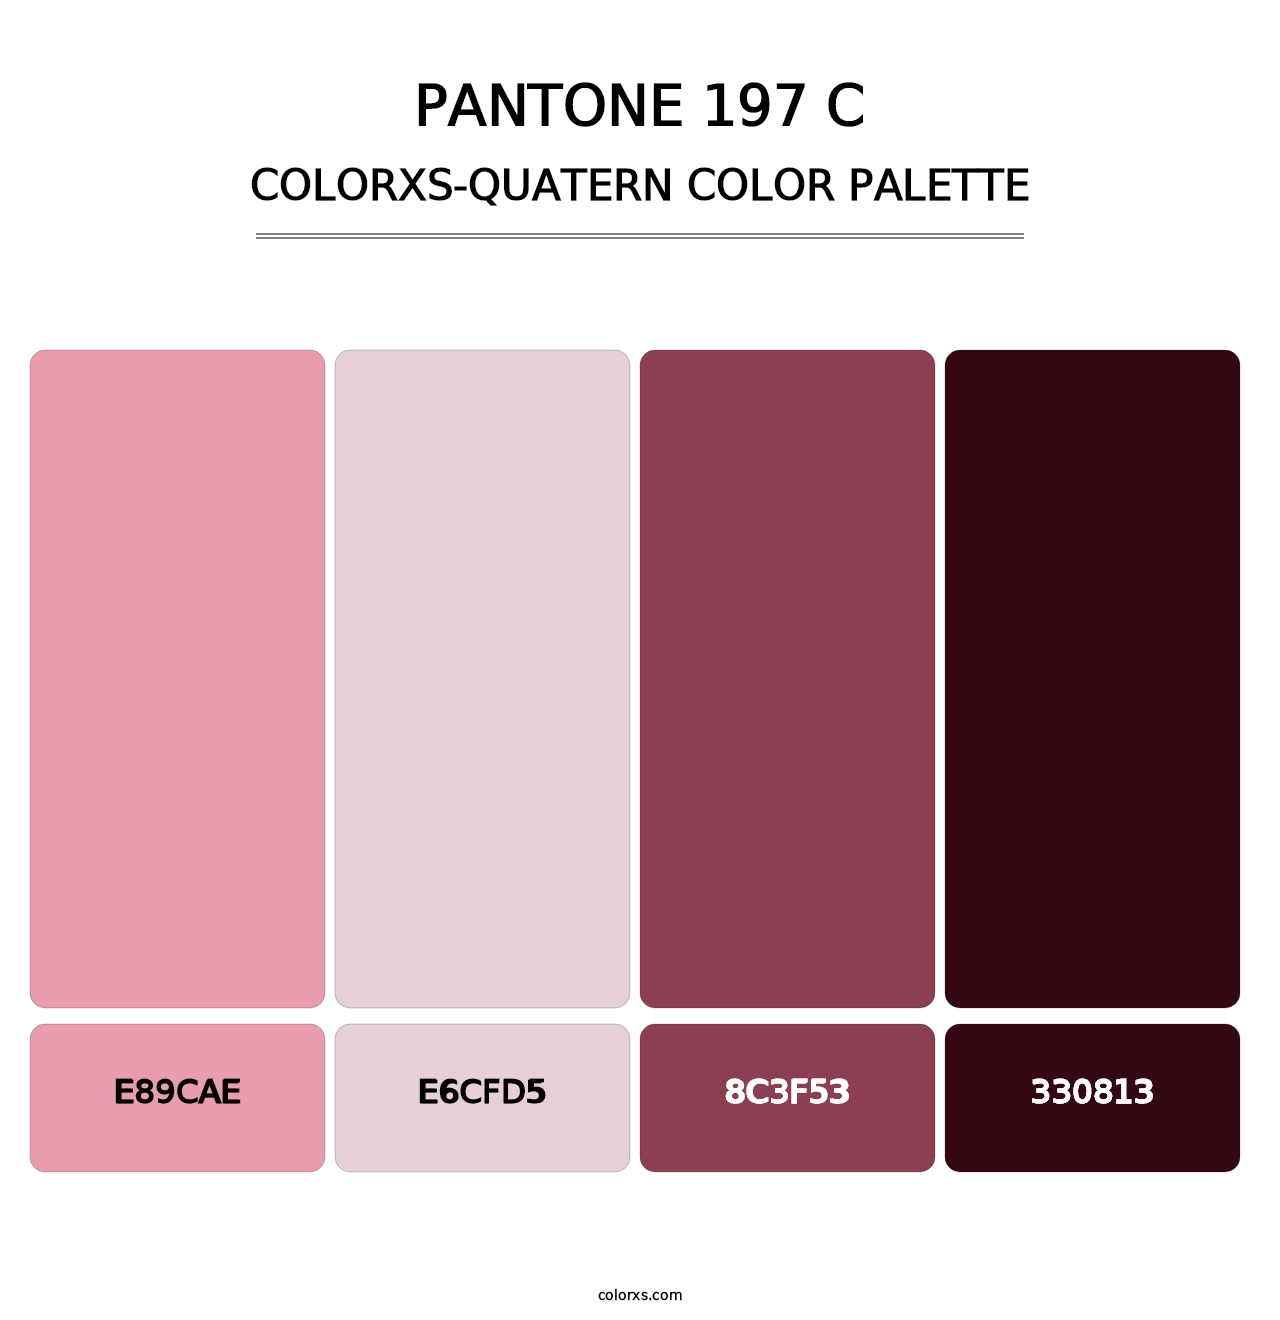 PANTONE 197 C - Colorxs Quatern Palette